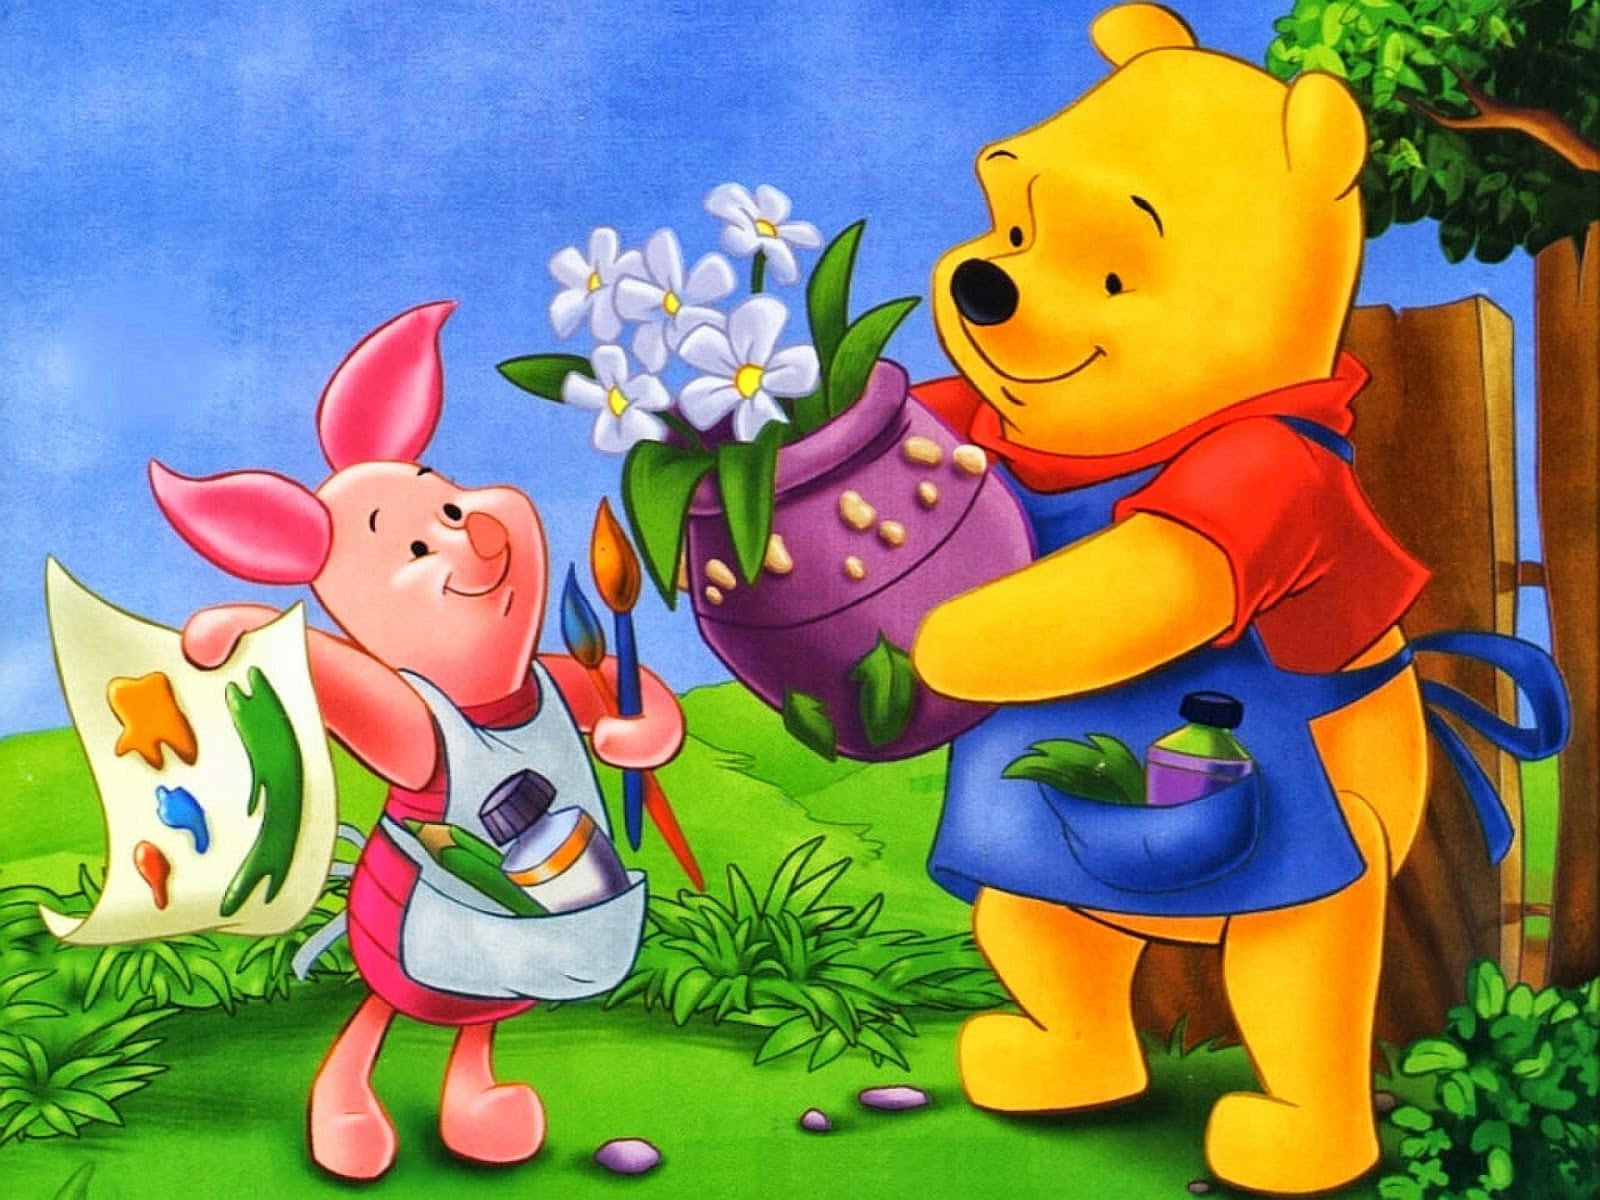 Unmomento Classico Di Winnie The Pooh